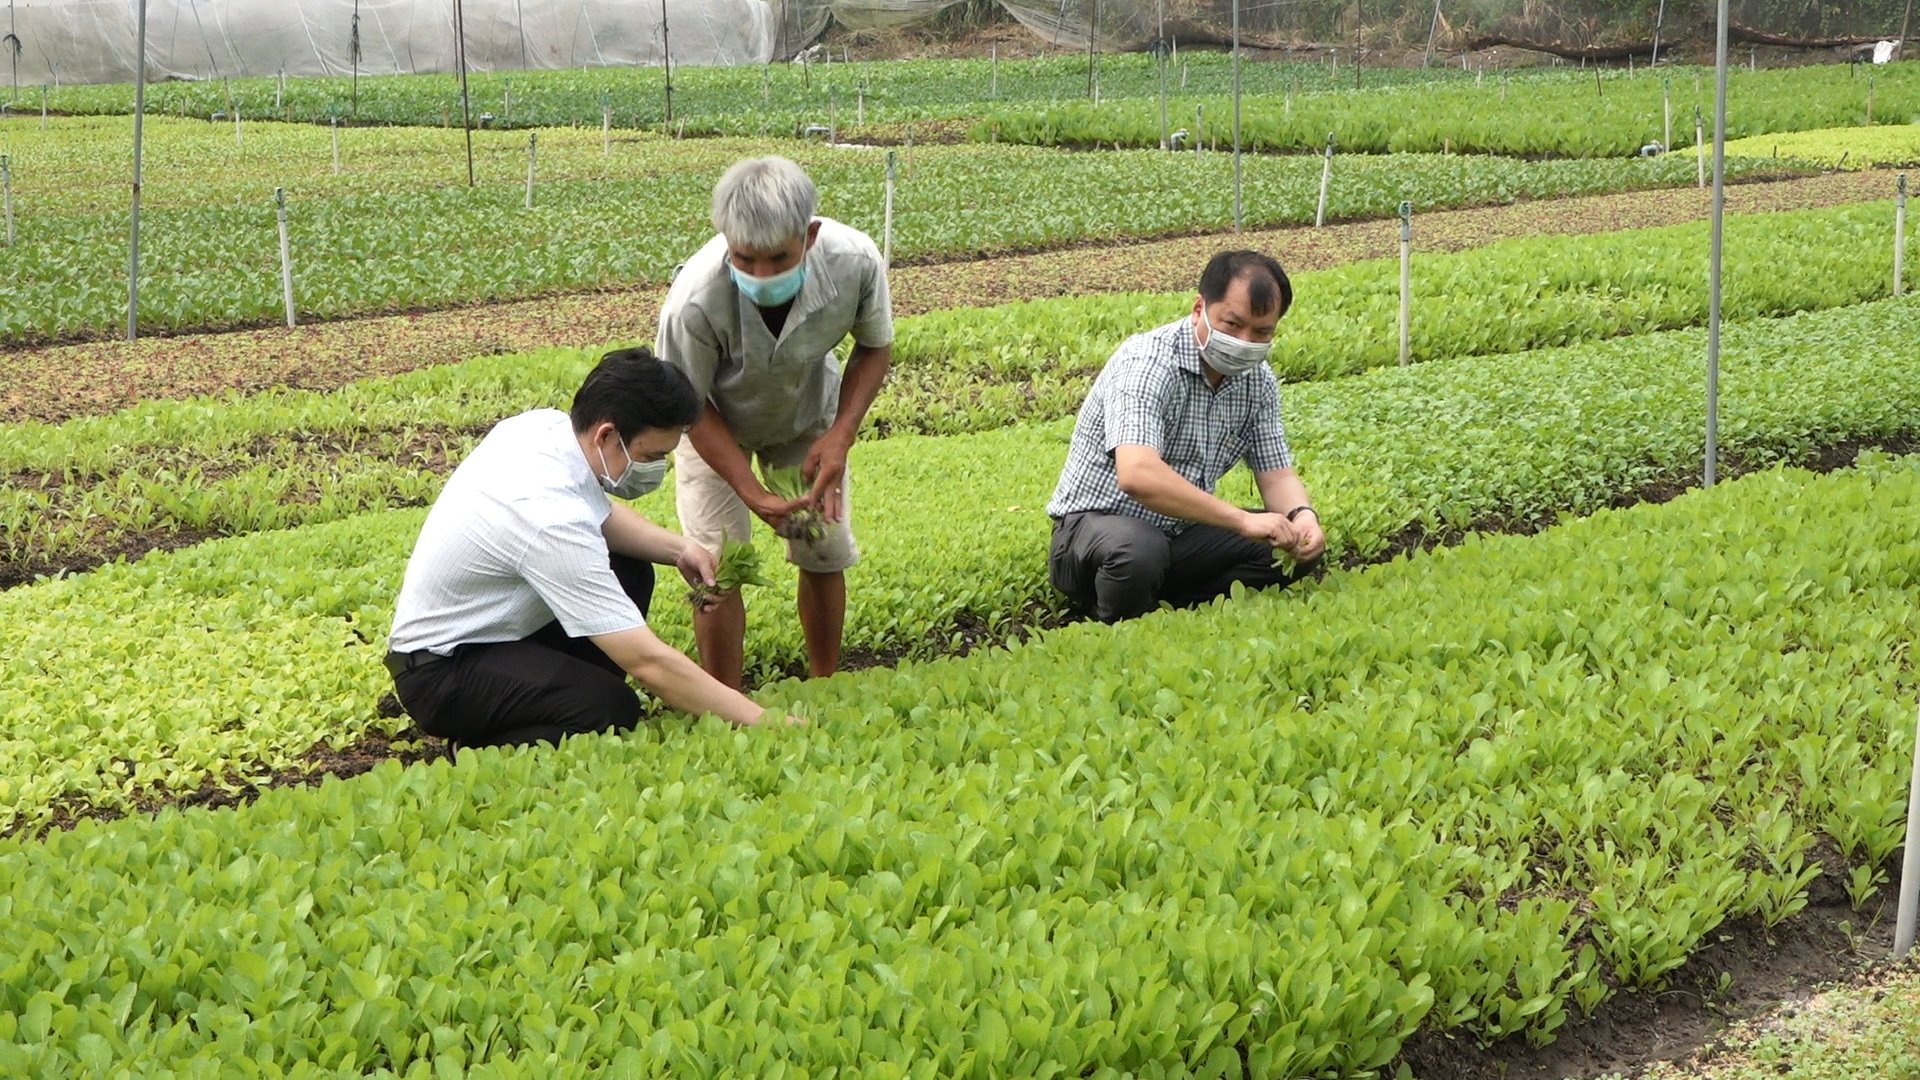 Mô hình trồng rau trong nhà màng, nhà lưới ở xã Vĩnh An, huyện Củ Chi đang triển khai trồng rau an toàn cung cấp cho thị trường Tết. Ảnh: Minh Sáng.